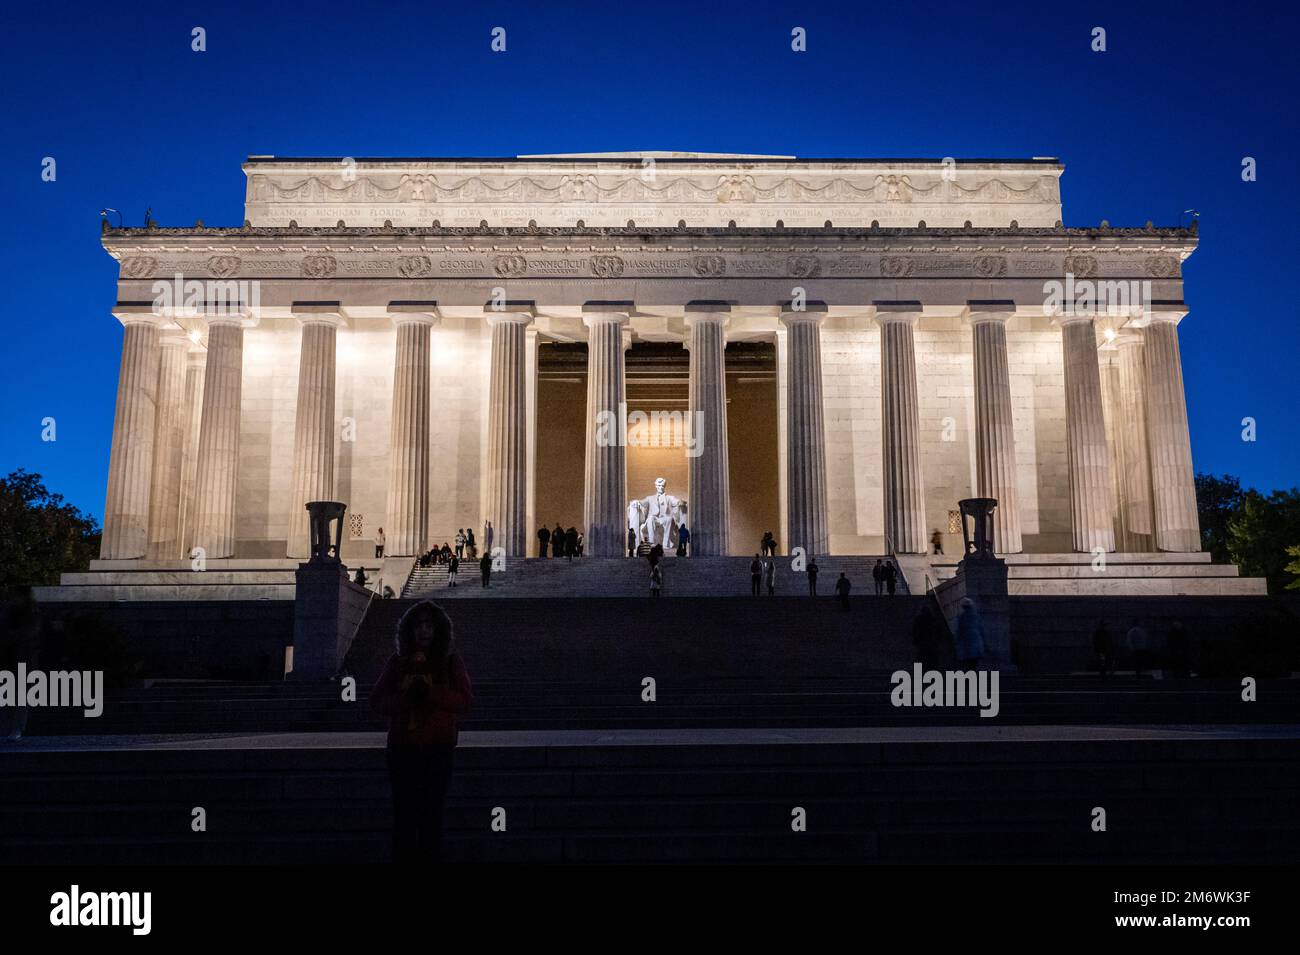 Vista al tramonto della facciata del Lincoln Memorial, il monumento situato sul National Mall di Washington, D.C. Niente nuvole, umore scuro, vista frontale. Foto Stock